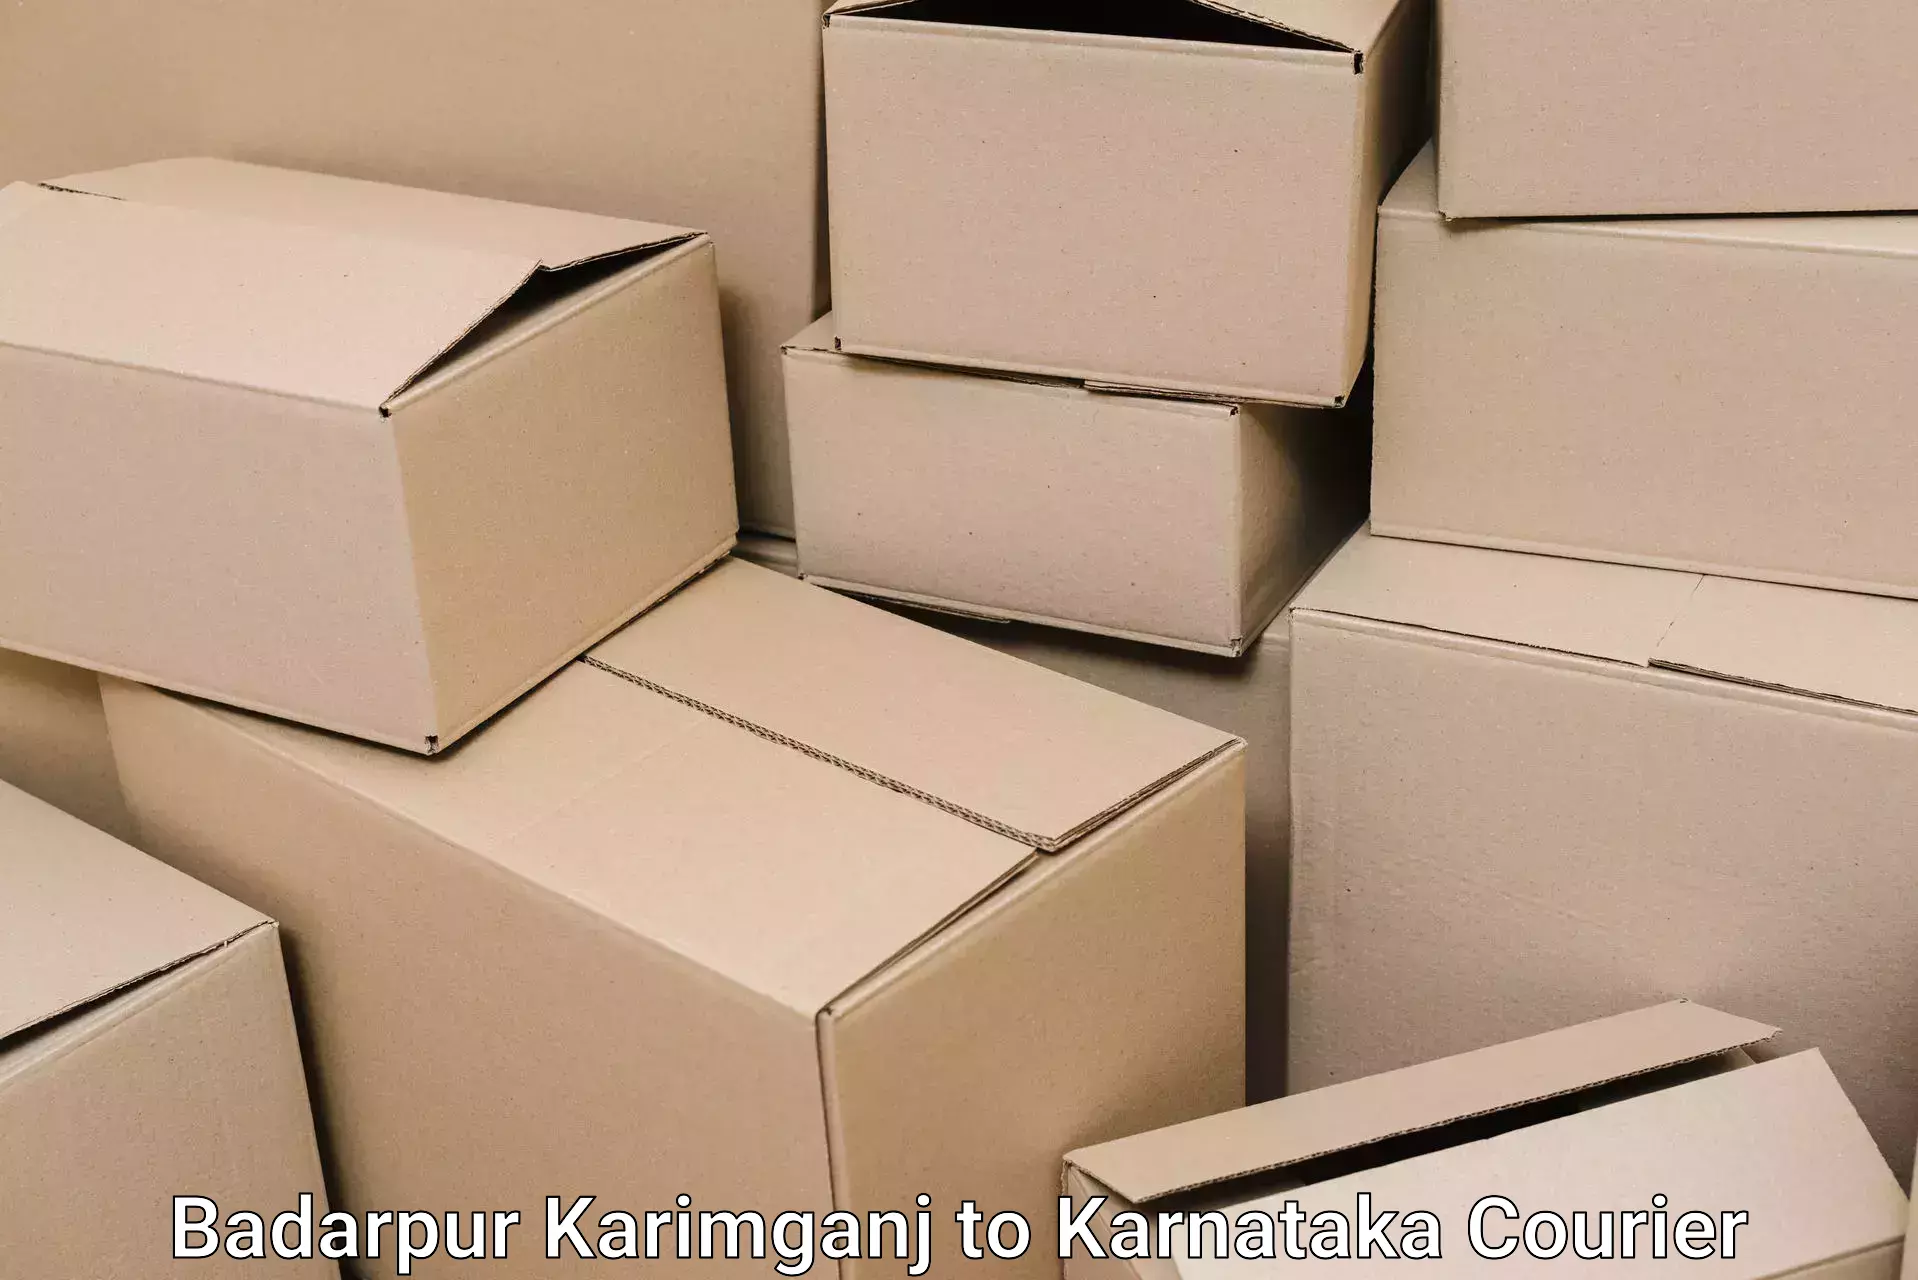 Trusted relocation experts Badarpur Karimganj to Mangalore